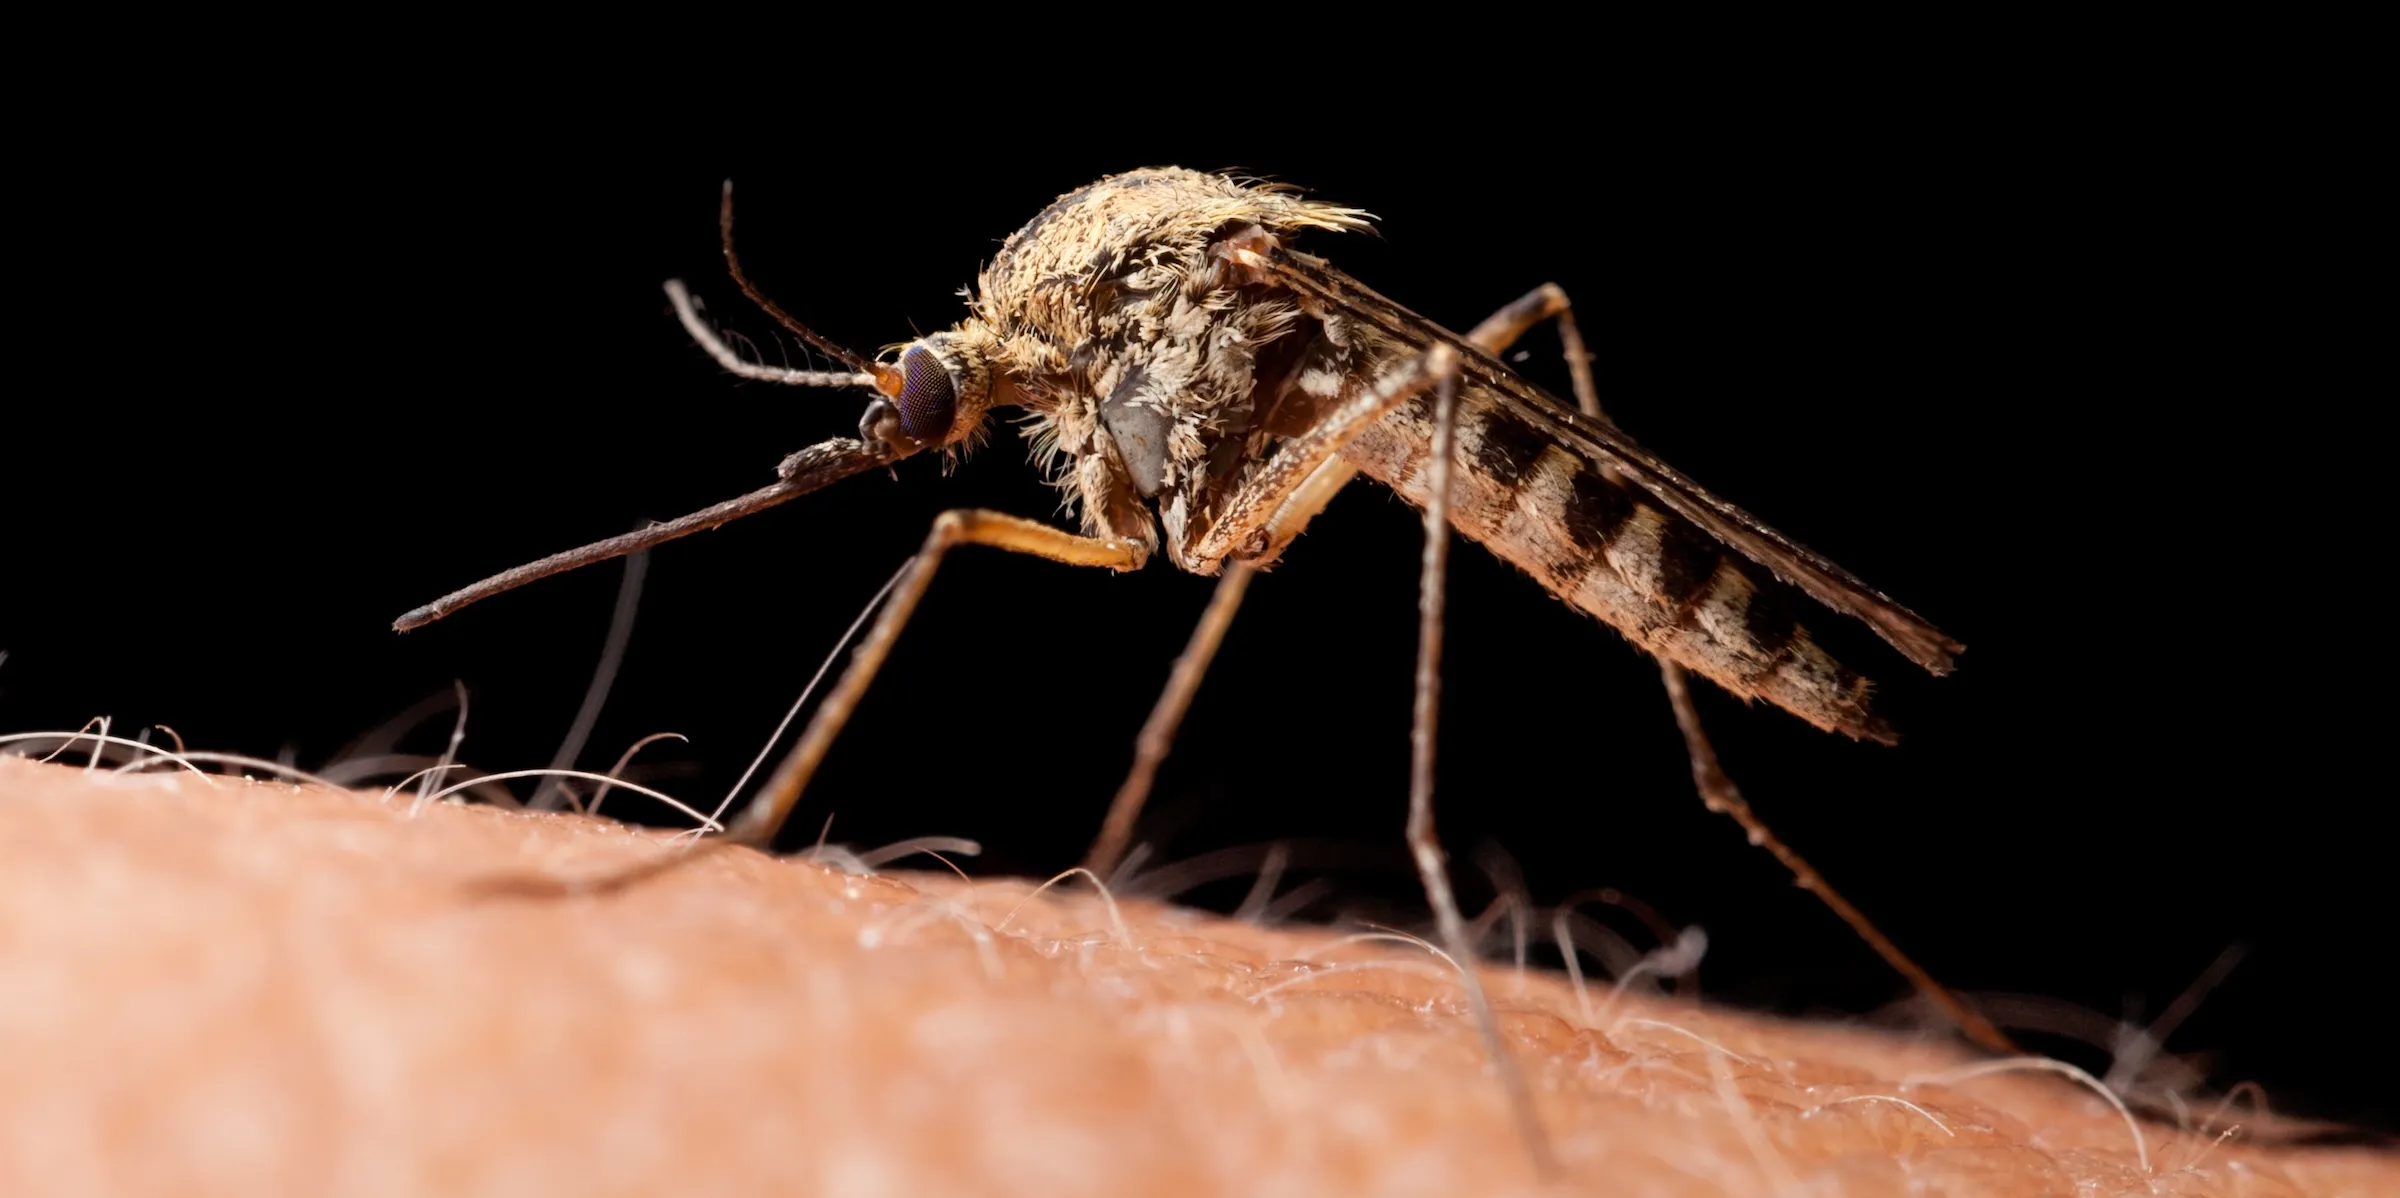 Myggsommaren blir en plåga – så här skyddar du dig